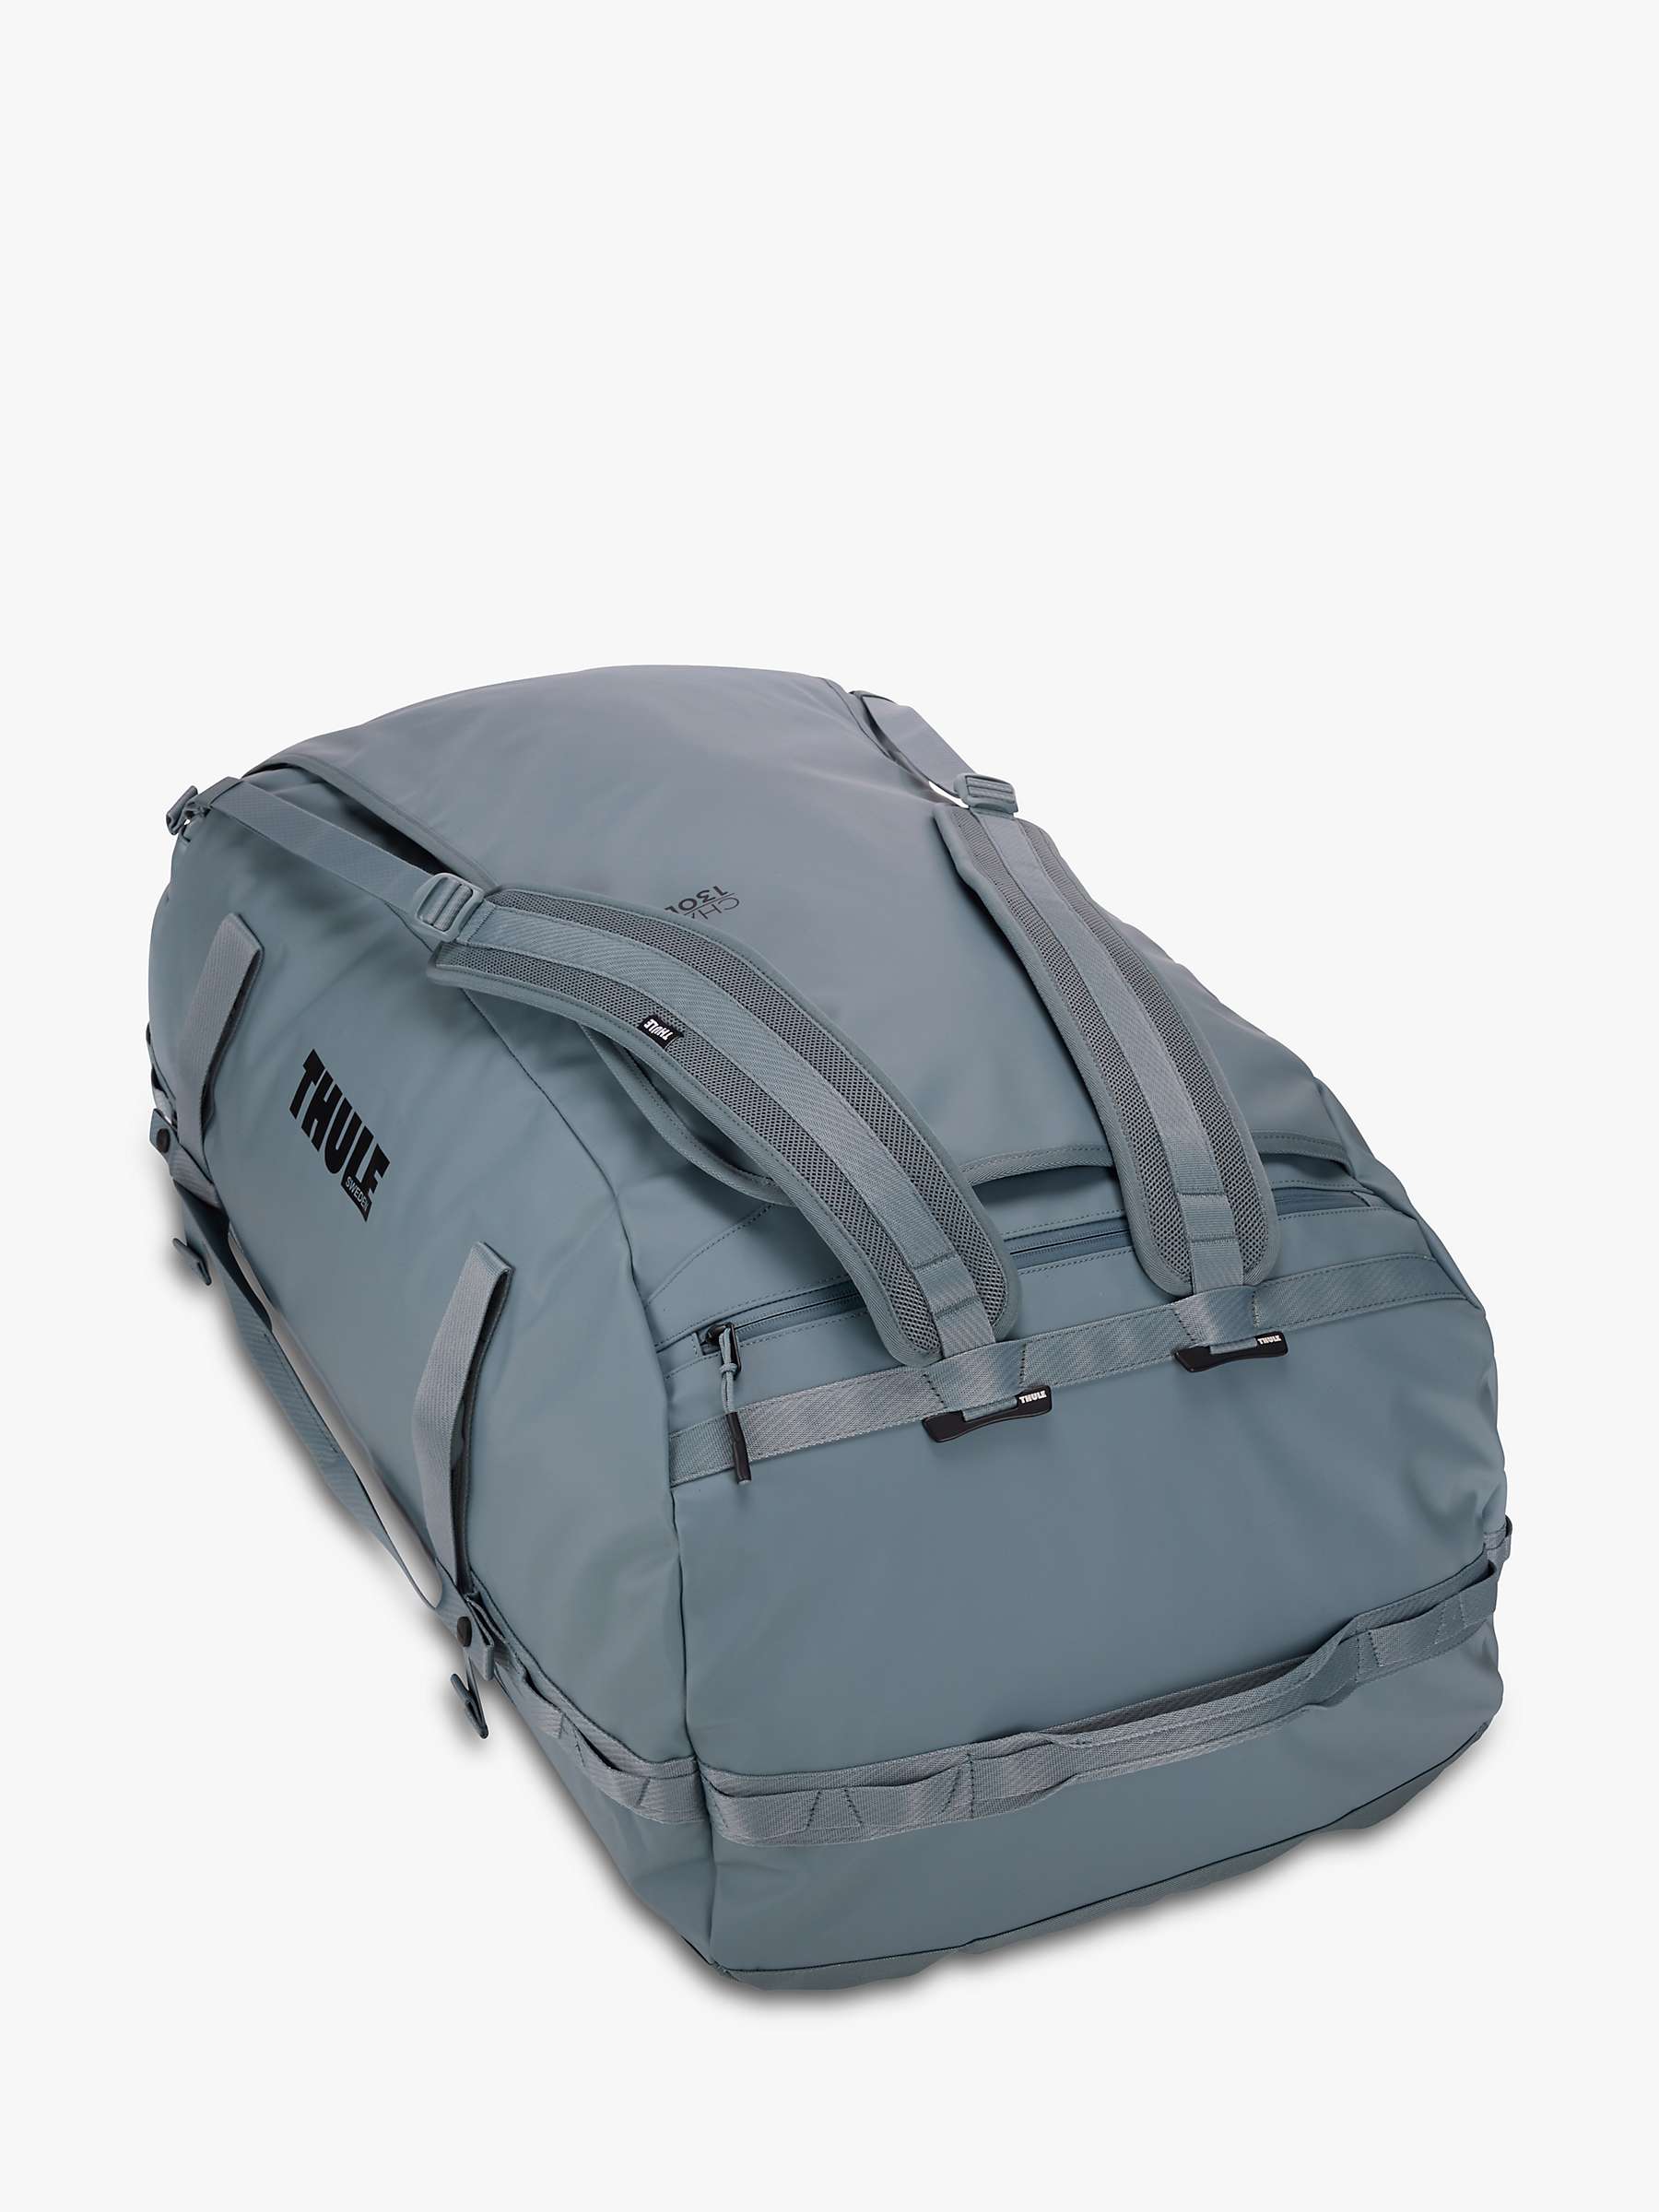 Buy Thule Chasm 130L Duffel Bag Online at johnlewis.com